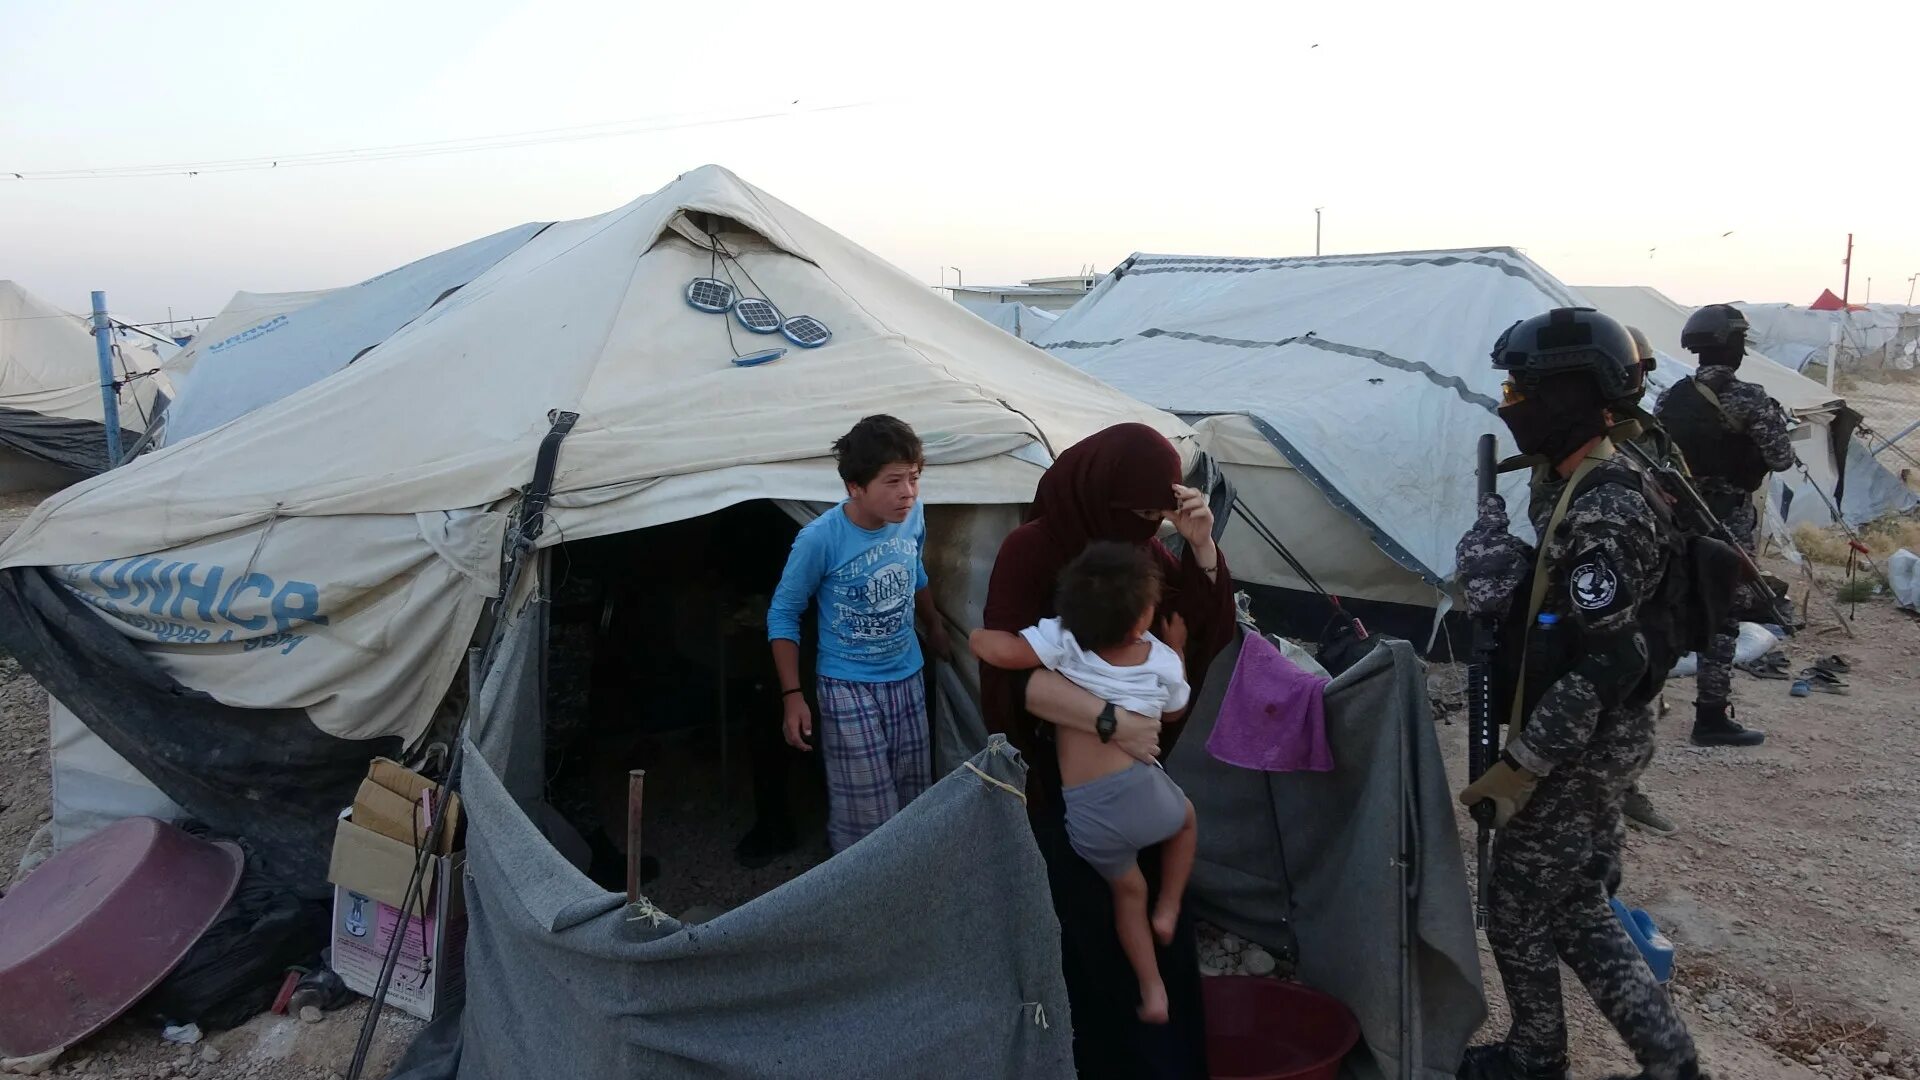 Новости холе. Аль Холь лагерь беженцев. В лагере беженцев «Аль-хол». Лагерь беженцев в Сирии Аль Холь.